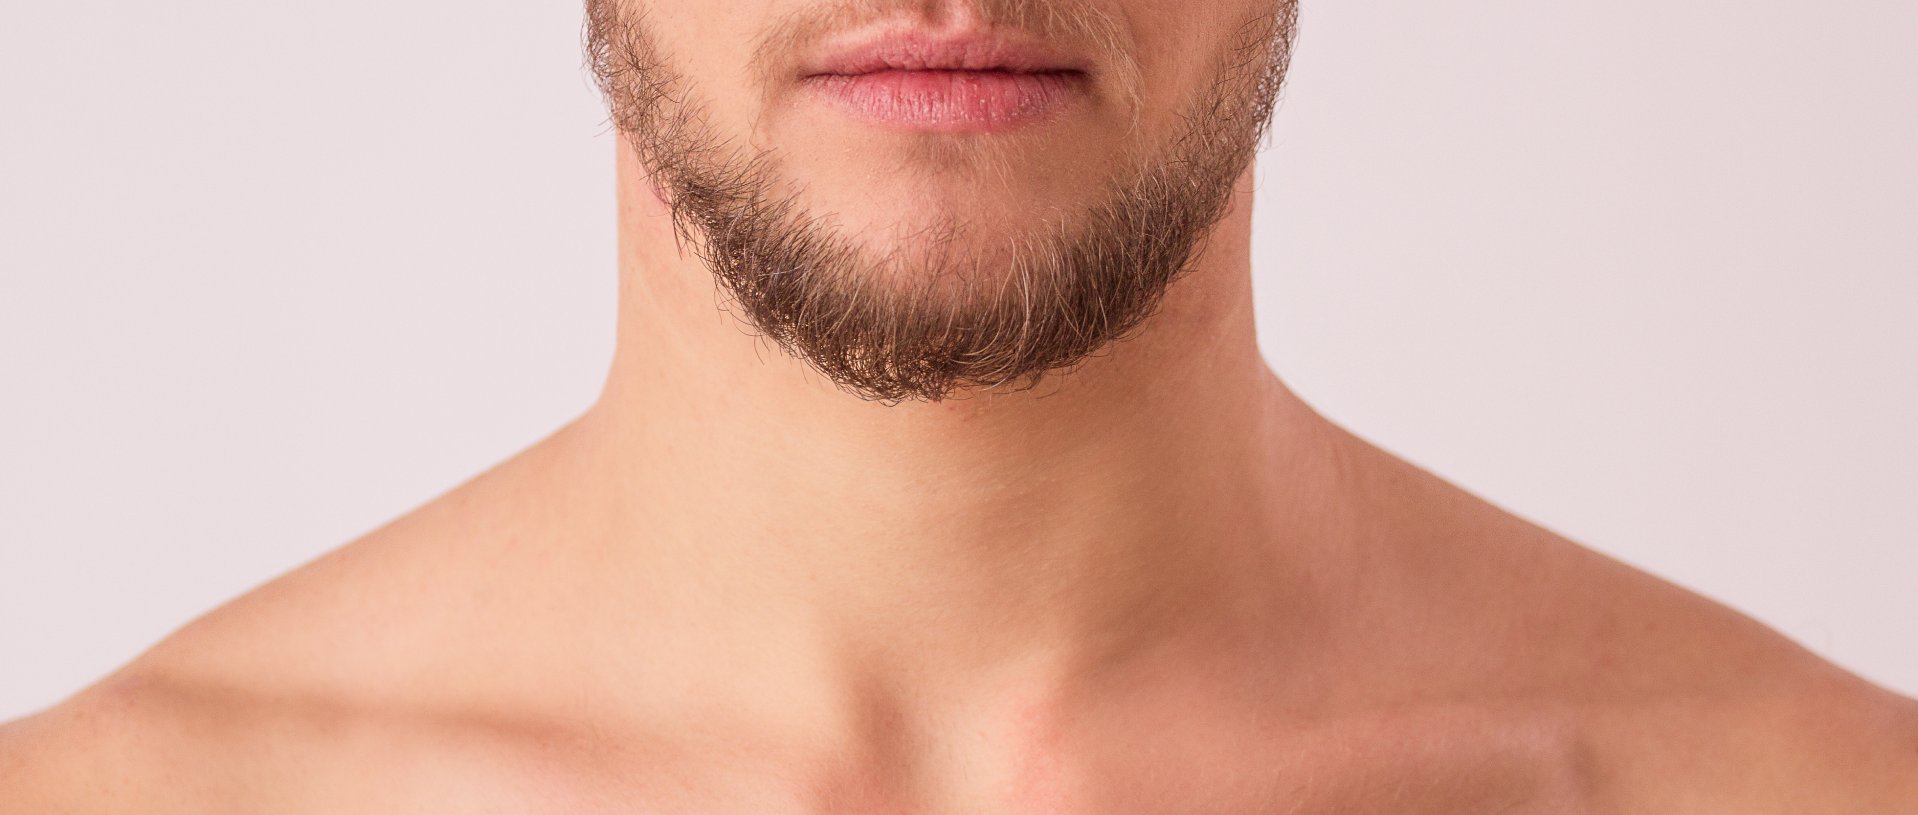 neck contour | masculine neck